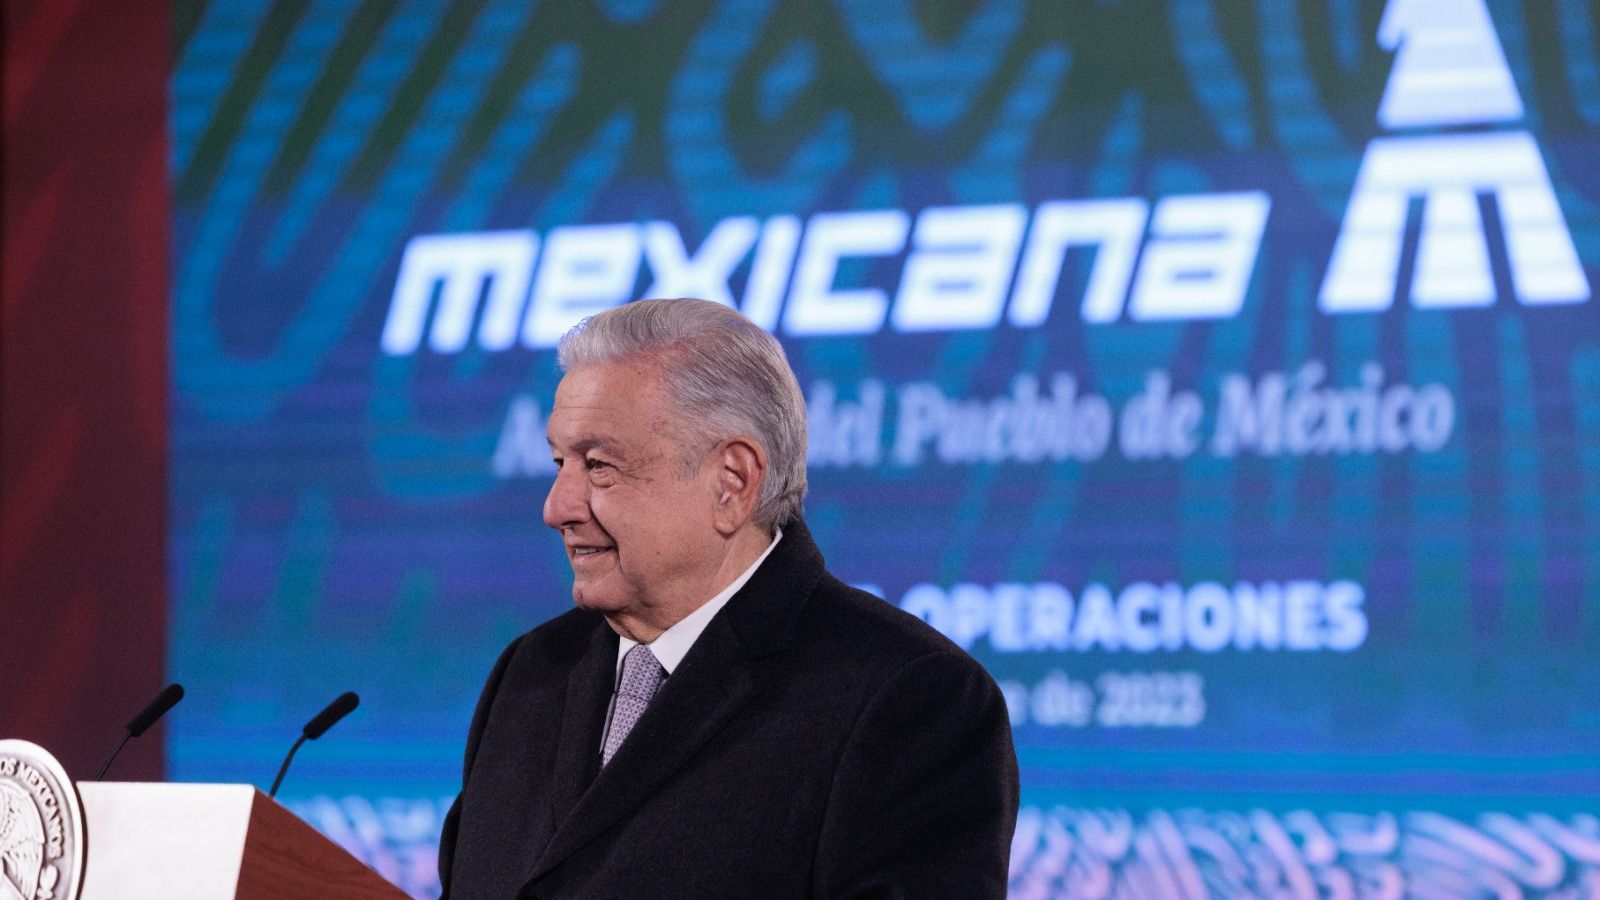 “Mexicana de Aviación se manejará con honestidad, no la van a manejar ladrones”: AMLO